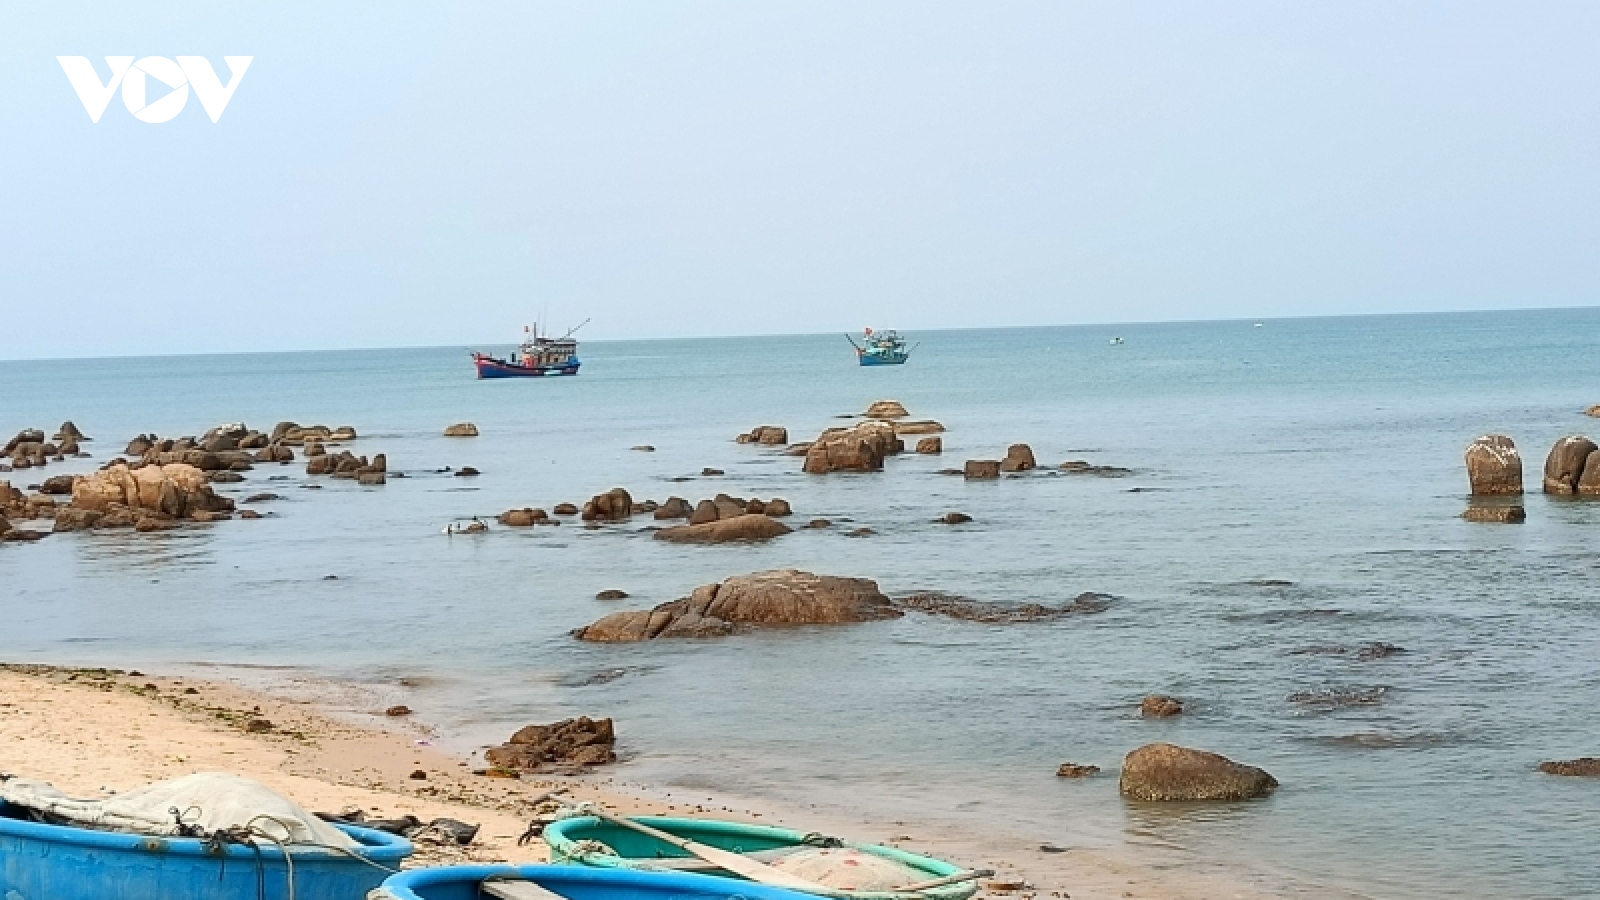 Sóng đánh chìm thuyền ở Bình Thuận khiến 1 ngư dân mất tích